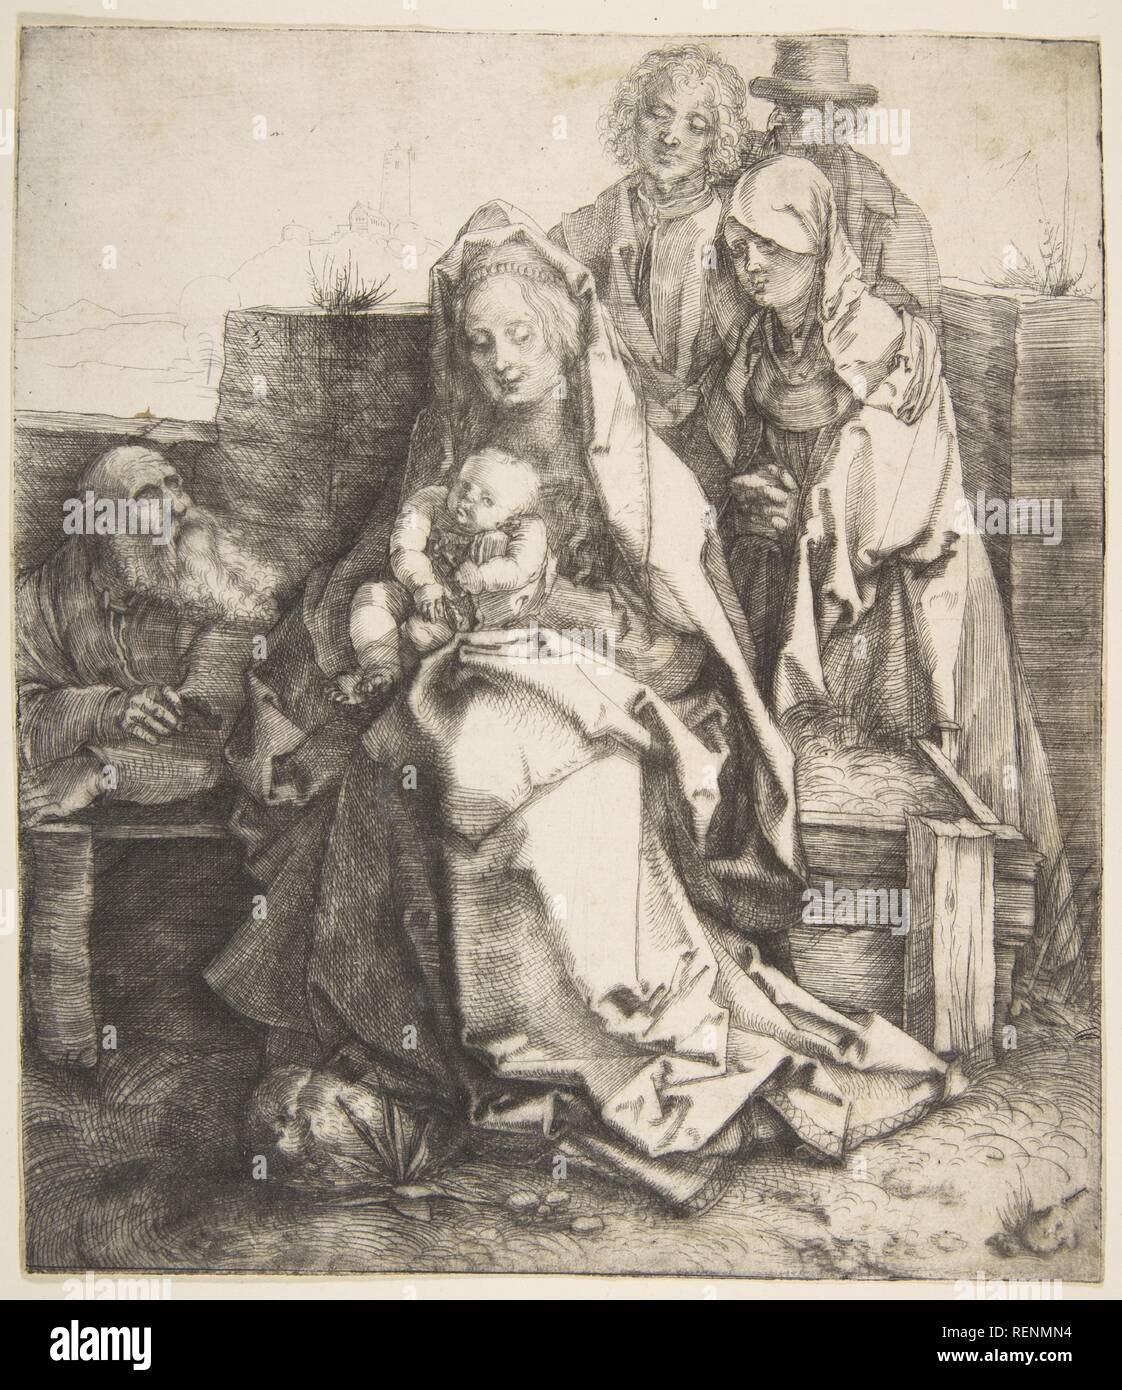 La Santa Famiglia. Artista: Albrecht Dürer (Tedesco, 1471-1528 Norimberga Norimberga). Dimensioni: foglio: 8 1/4 x 7 1/8 in. (21 x 18,1 cm). Data: 1512-13. Dürer creato solo tre stampe nel mezzo della puntasecca. Dal momento che le altre due sono datate 1512, questa puntasecca è presunta data dallo stesso tempo. La stampa è stata così prodotta all'altezza dell'artista la carriera, appena prima di tale famosa 'master stampe' come la malinconia e Knight, la morte e il diavolo. Eppure la composizione si rifa' a uno dell'artista le prime incisioni prodotte quando Dürer era sotto l'influenza dei più prolifici Foto Stock